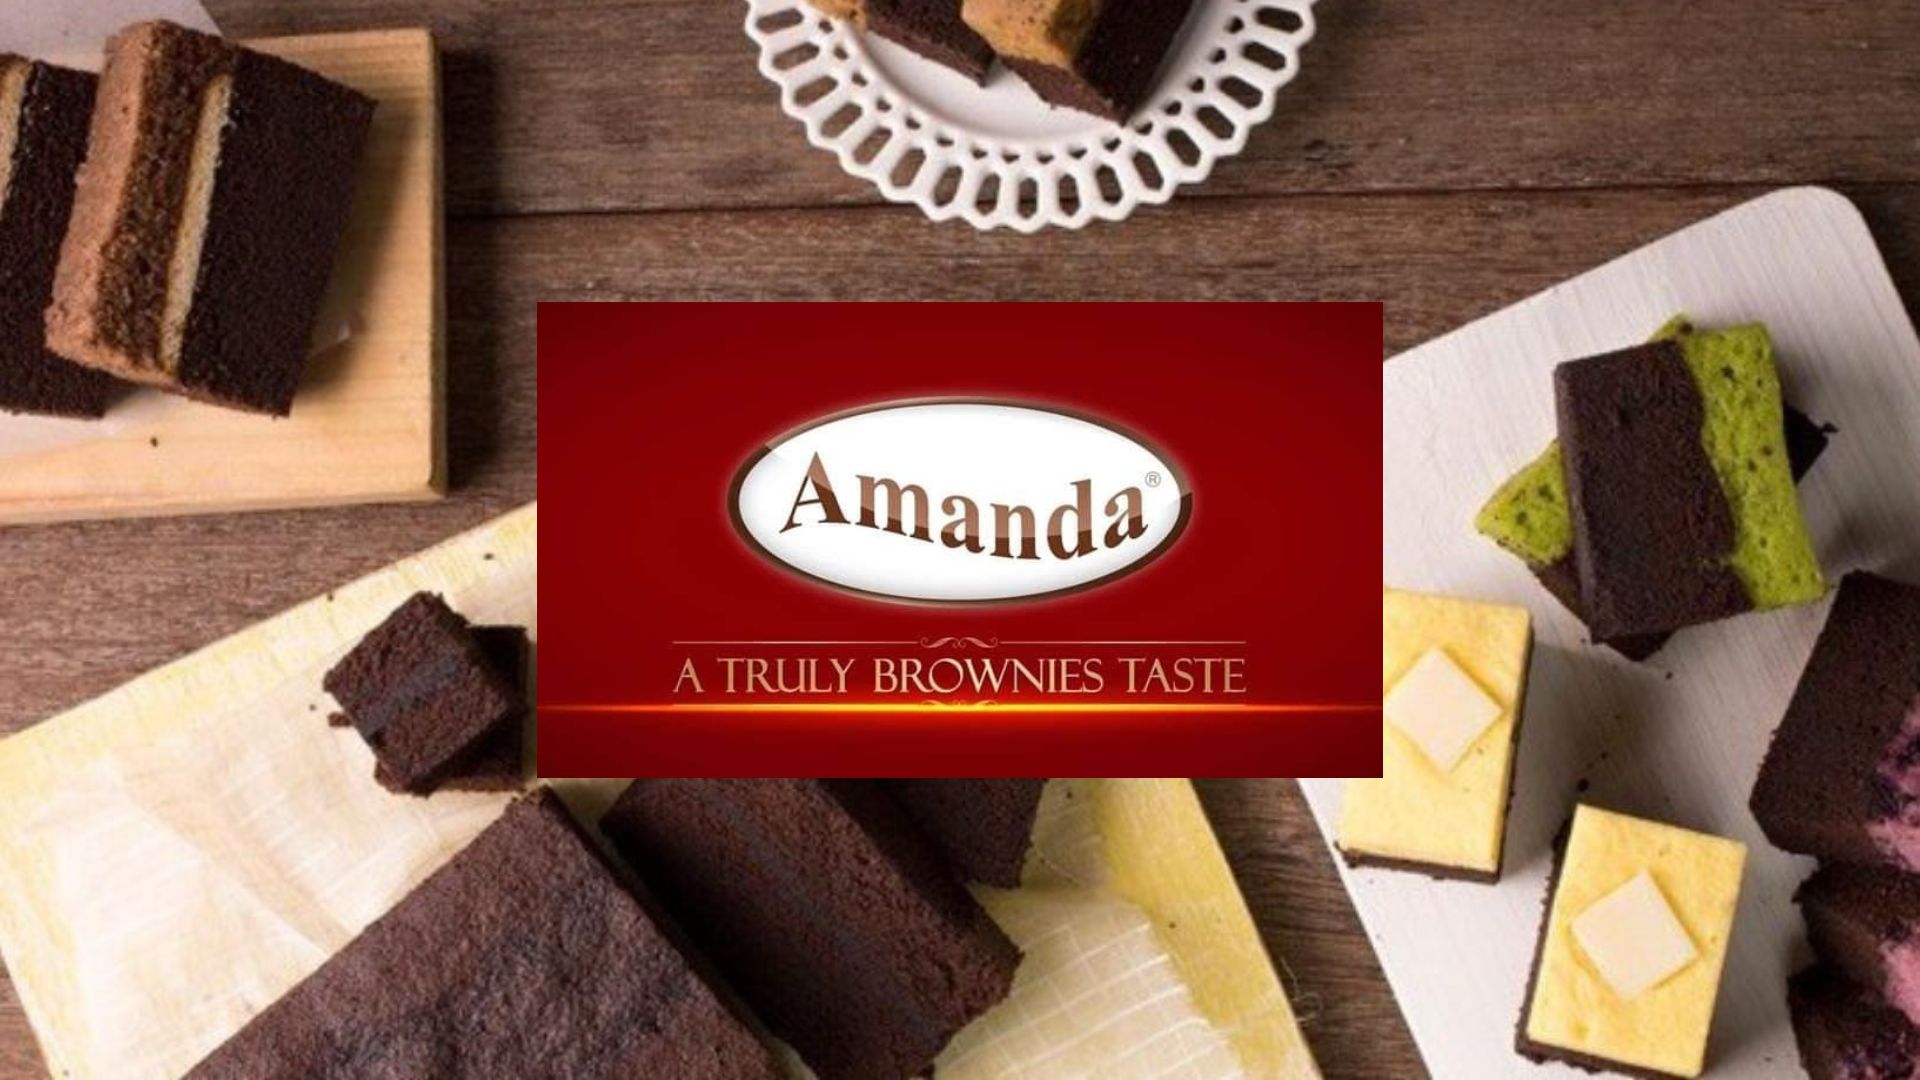 Katalog Brownies Amanda Terbaru Beserta Alamat Outlet